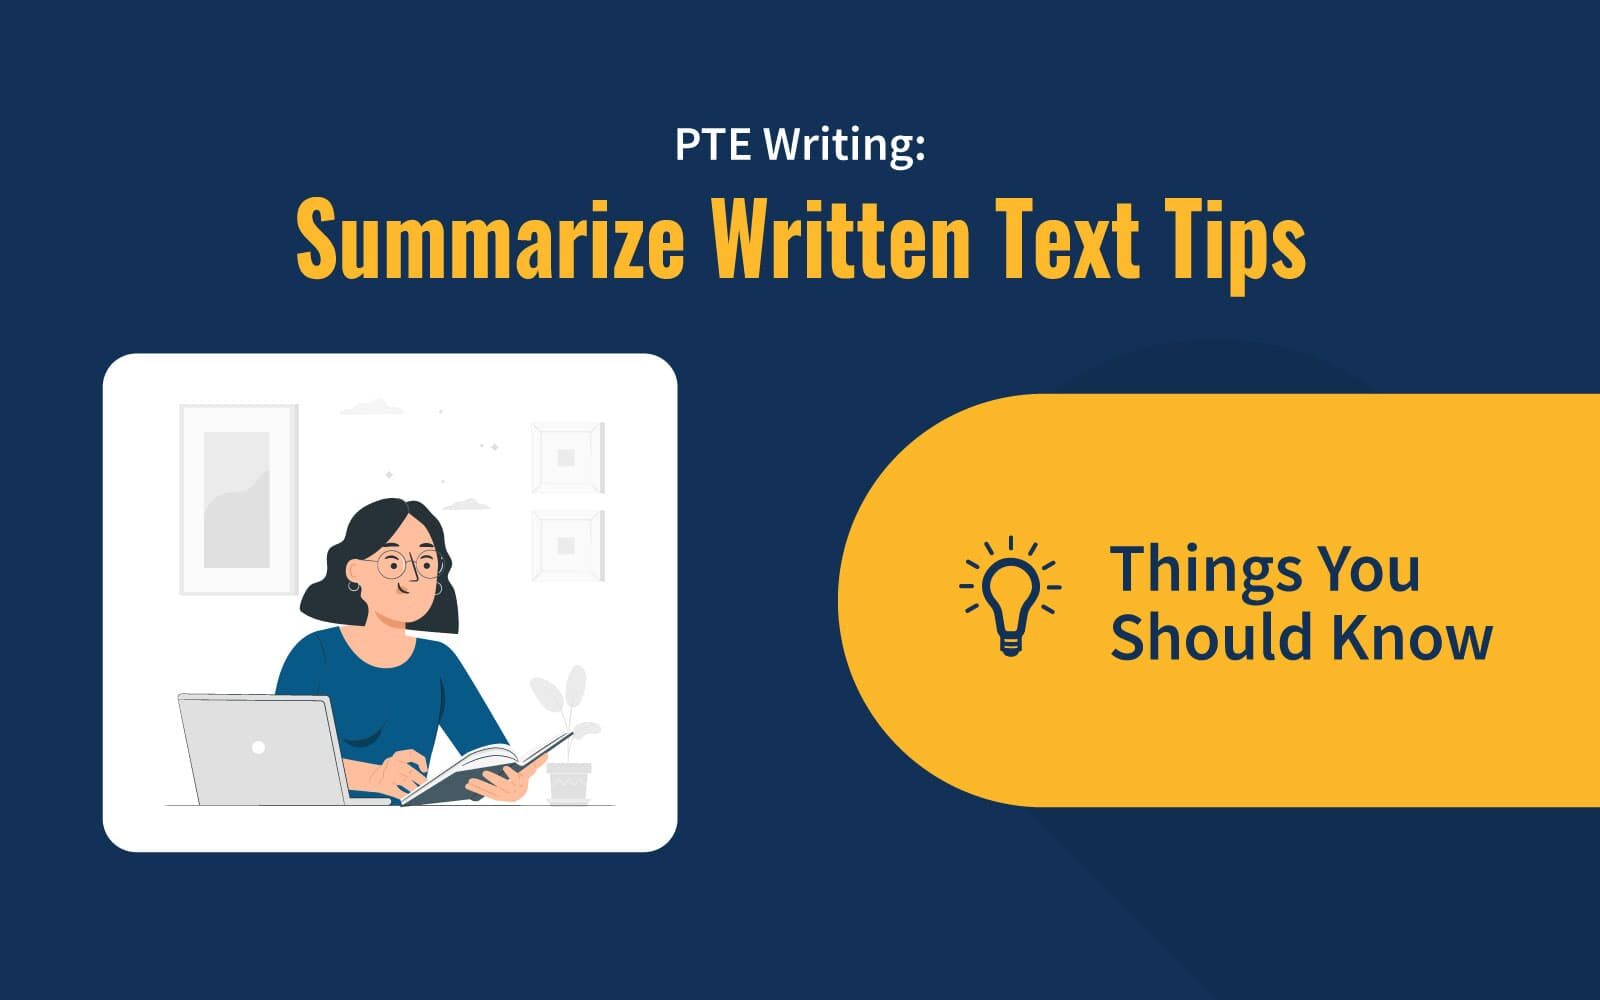 PTE Writing: Summarize Written Text Tips